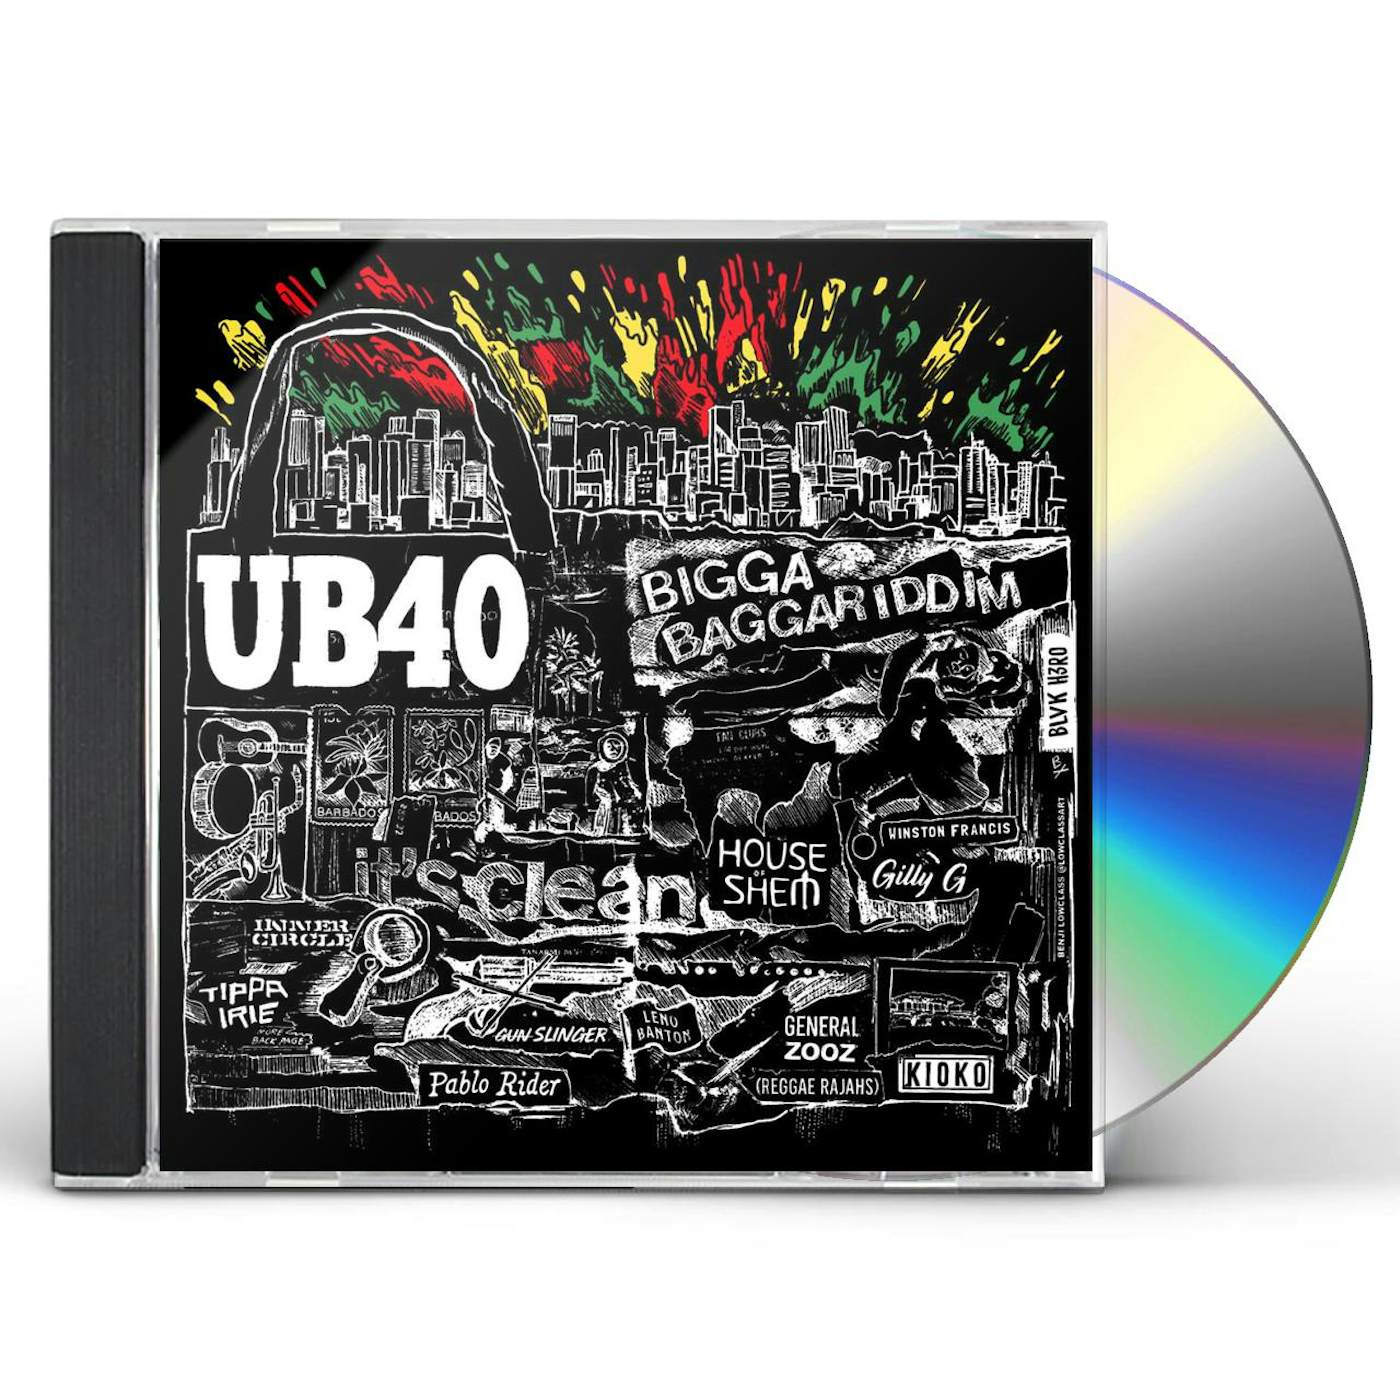 UB40 BIGGA BAGGARIDDIM CD